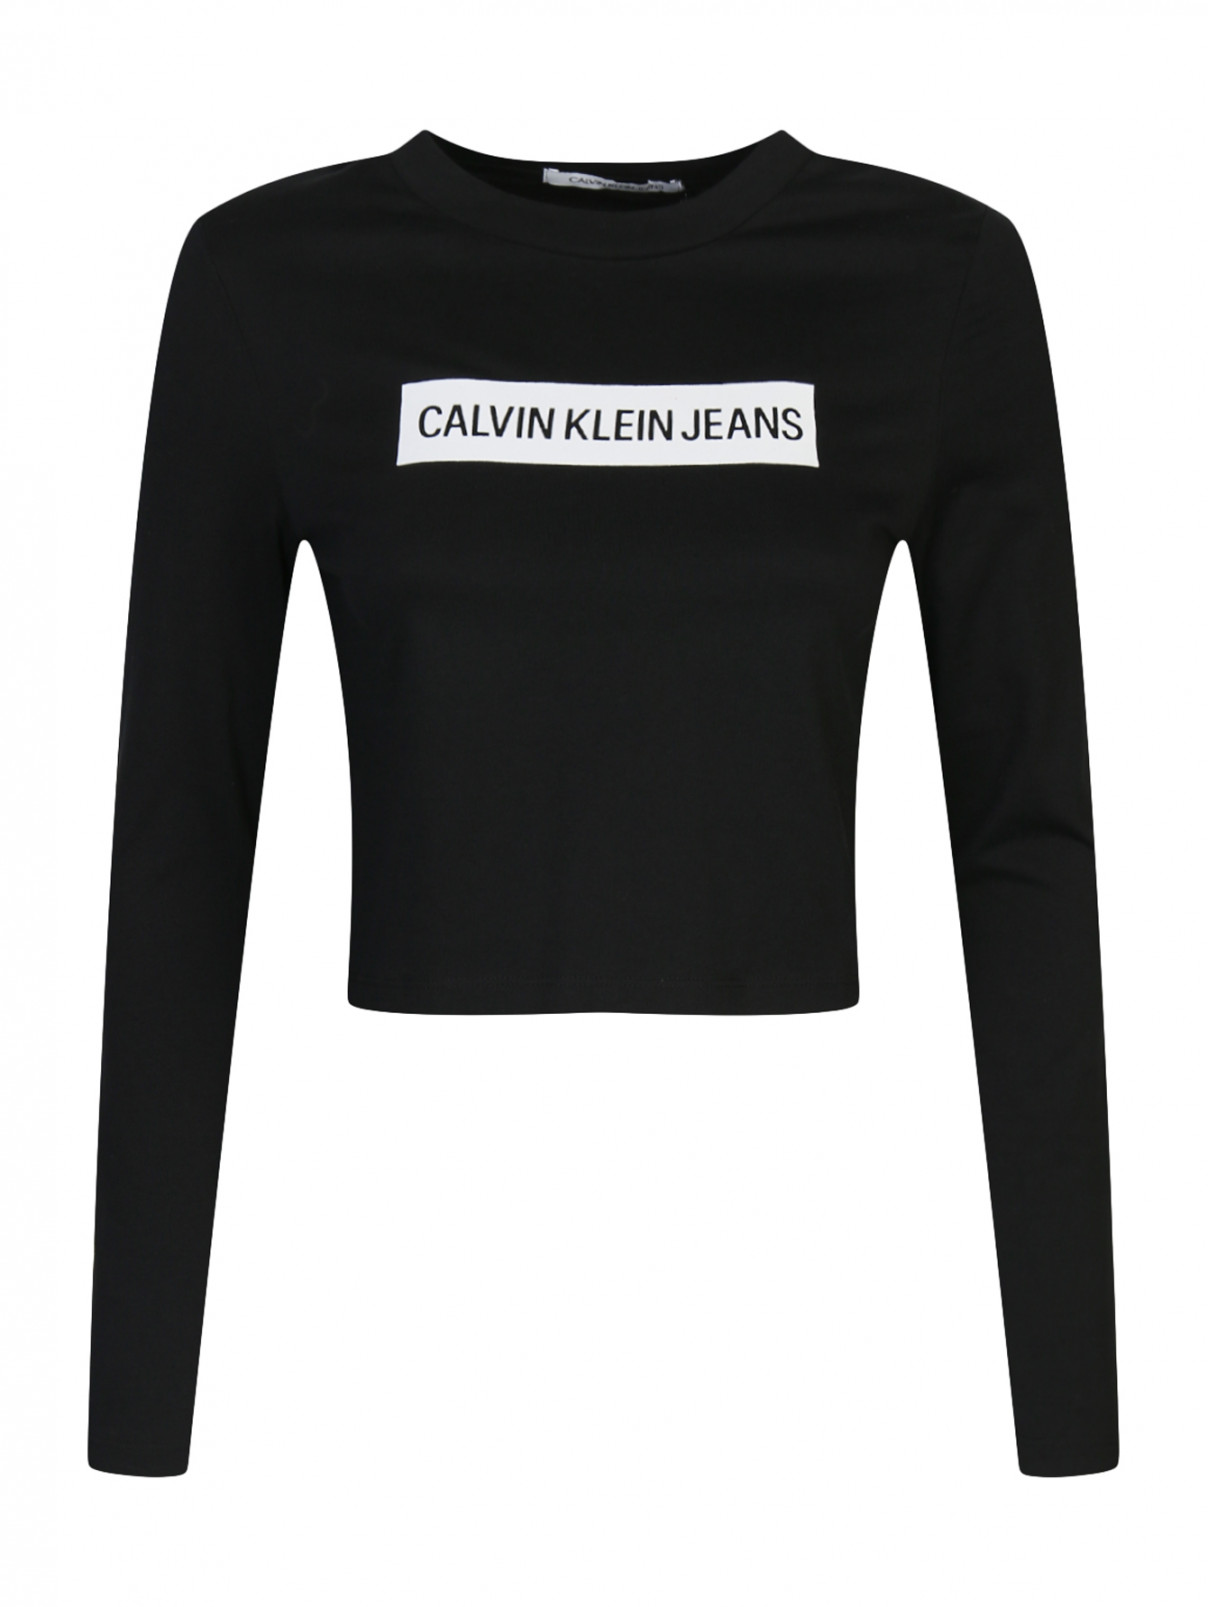 Укороченный топ из хлопка с принтом Calvin Klein  –  Общий вид  – Цвет:  Черный